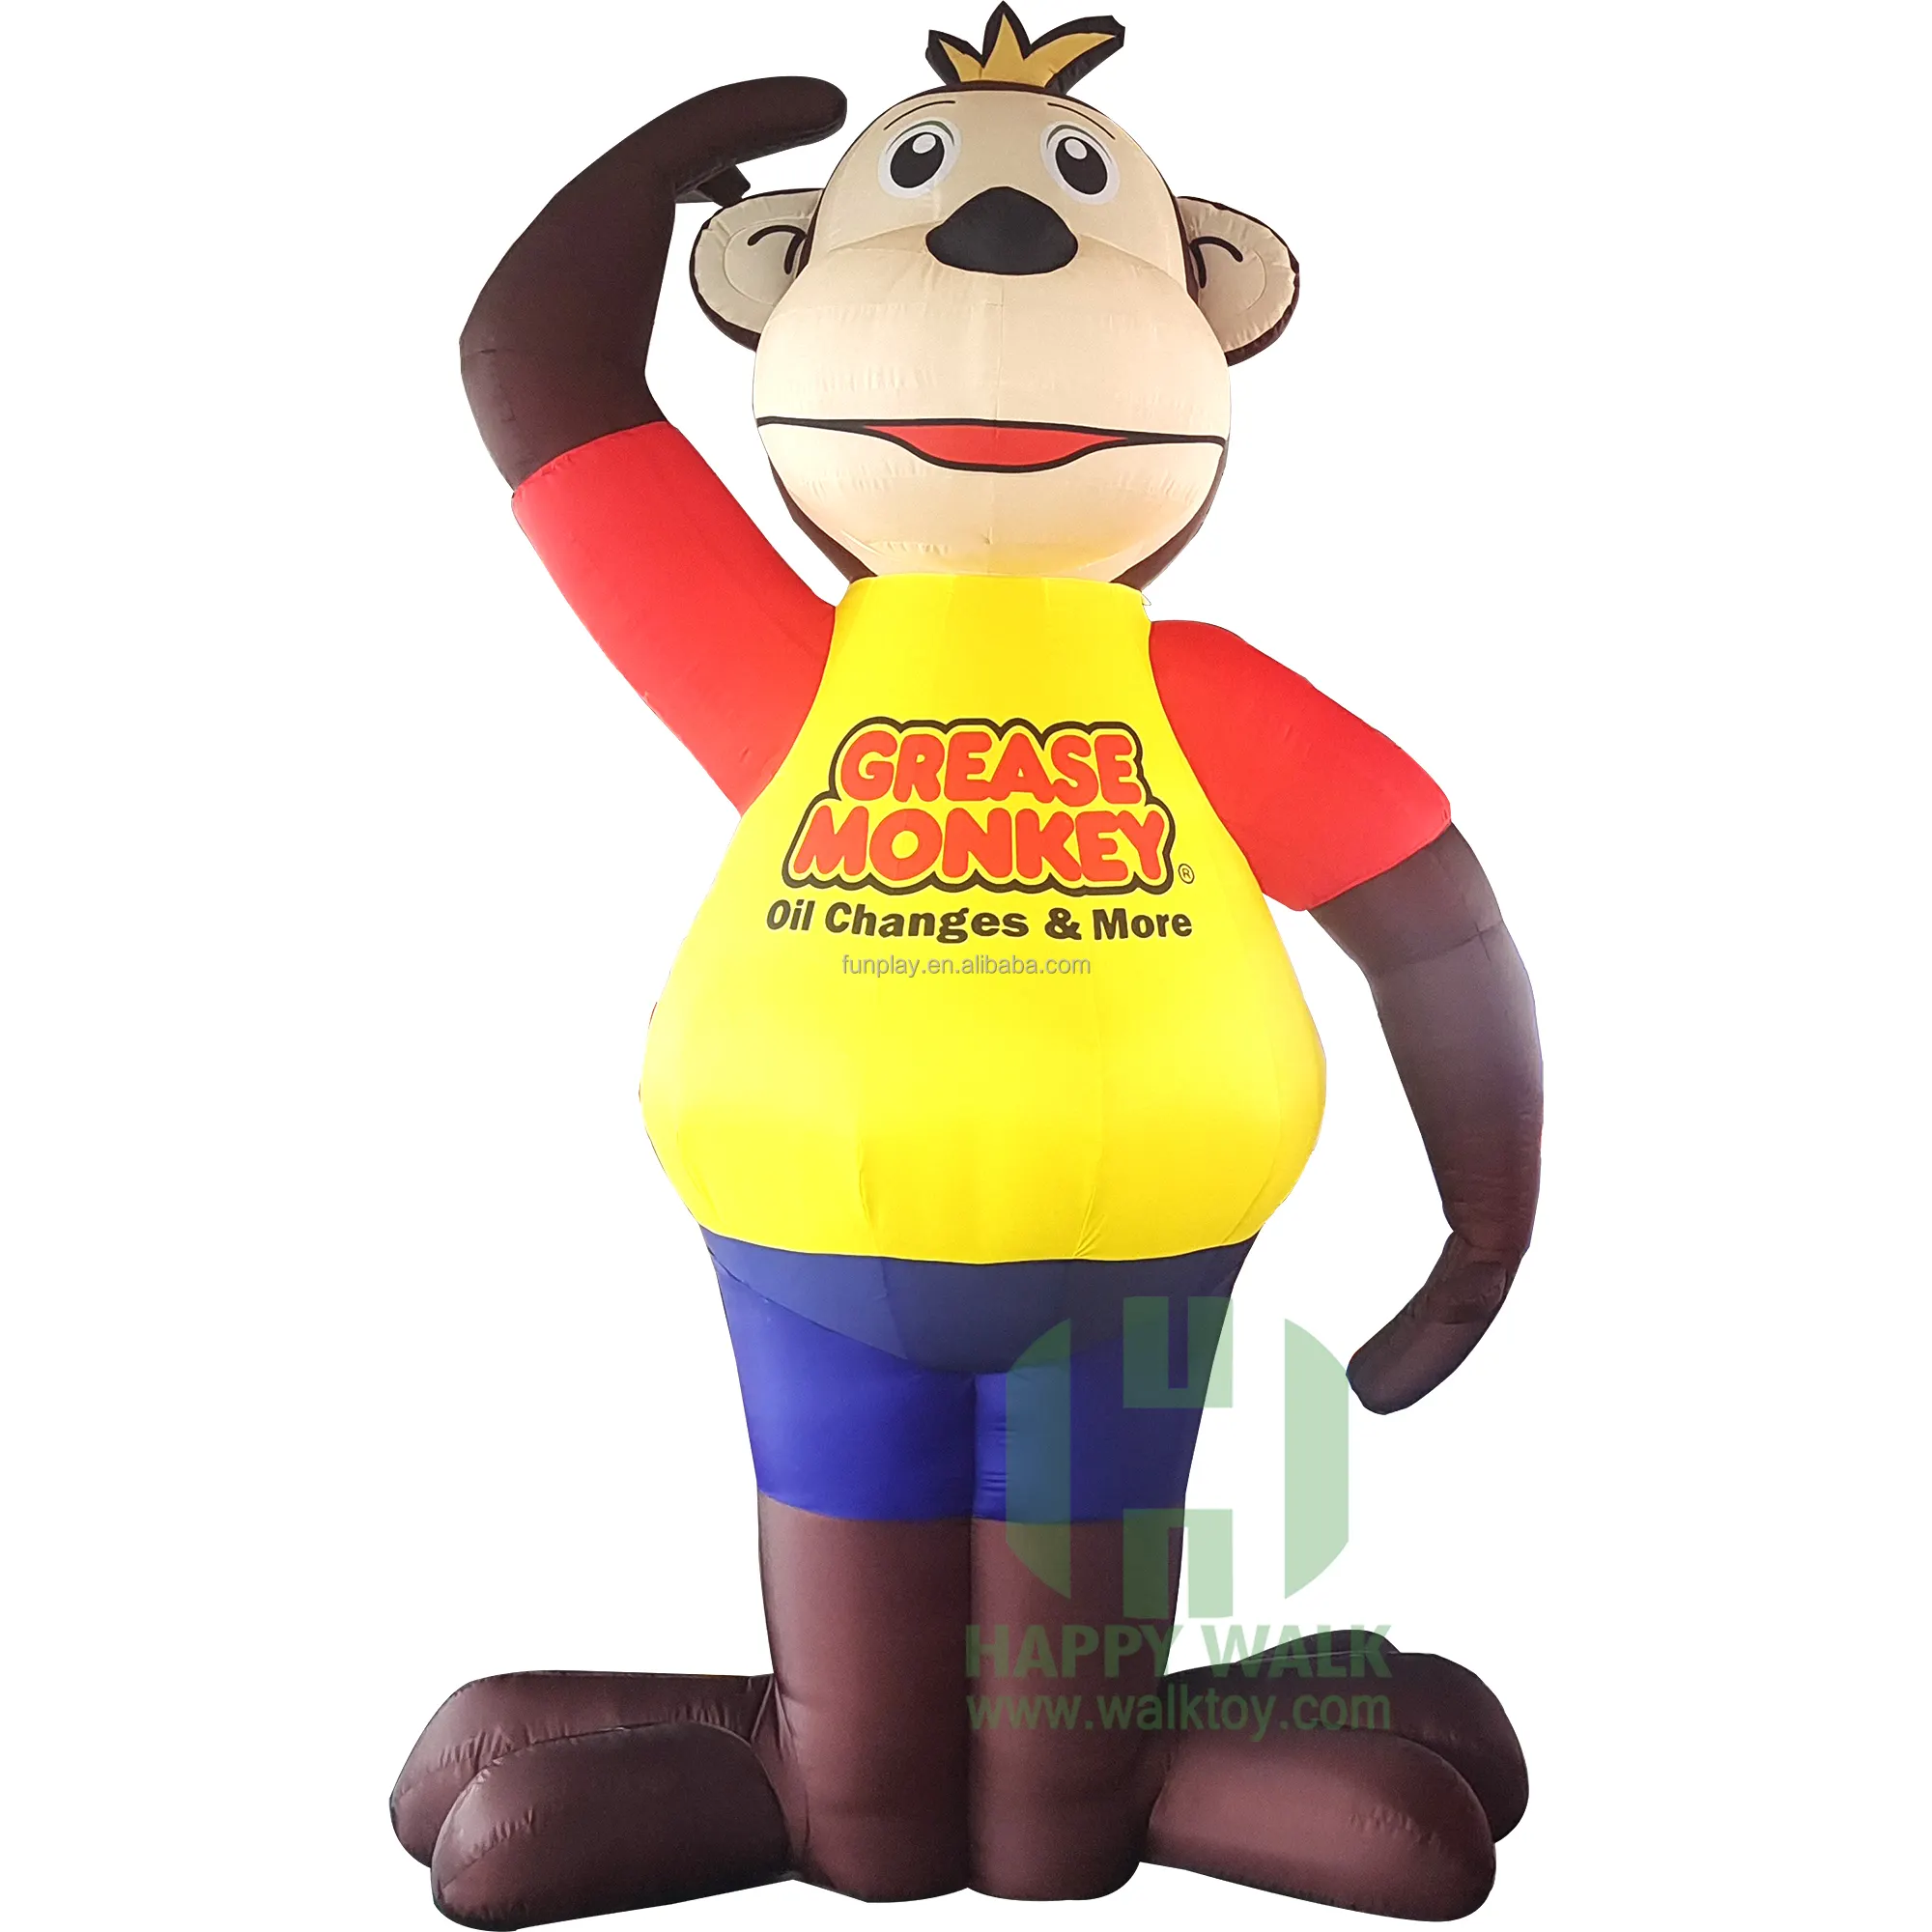 Gigante inflável propaganda macaco modelo ao ar livre, grande propaganda dos desenhos animados personagem inflável